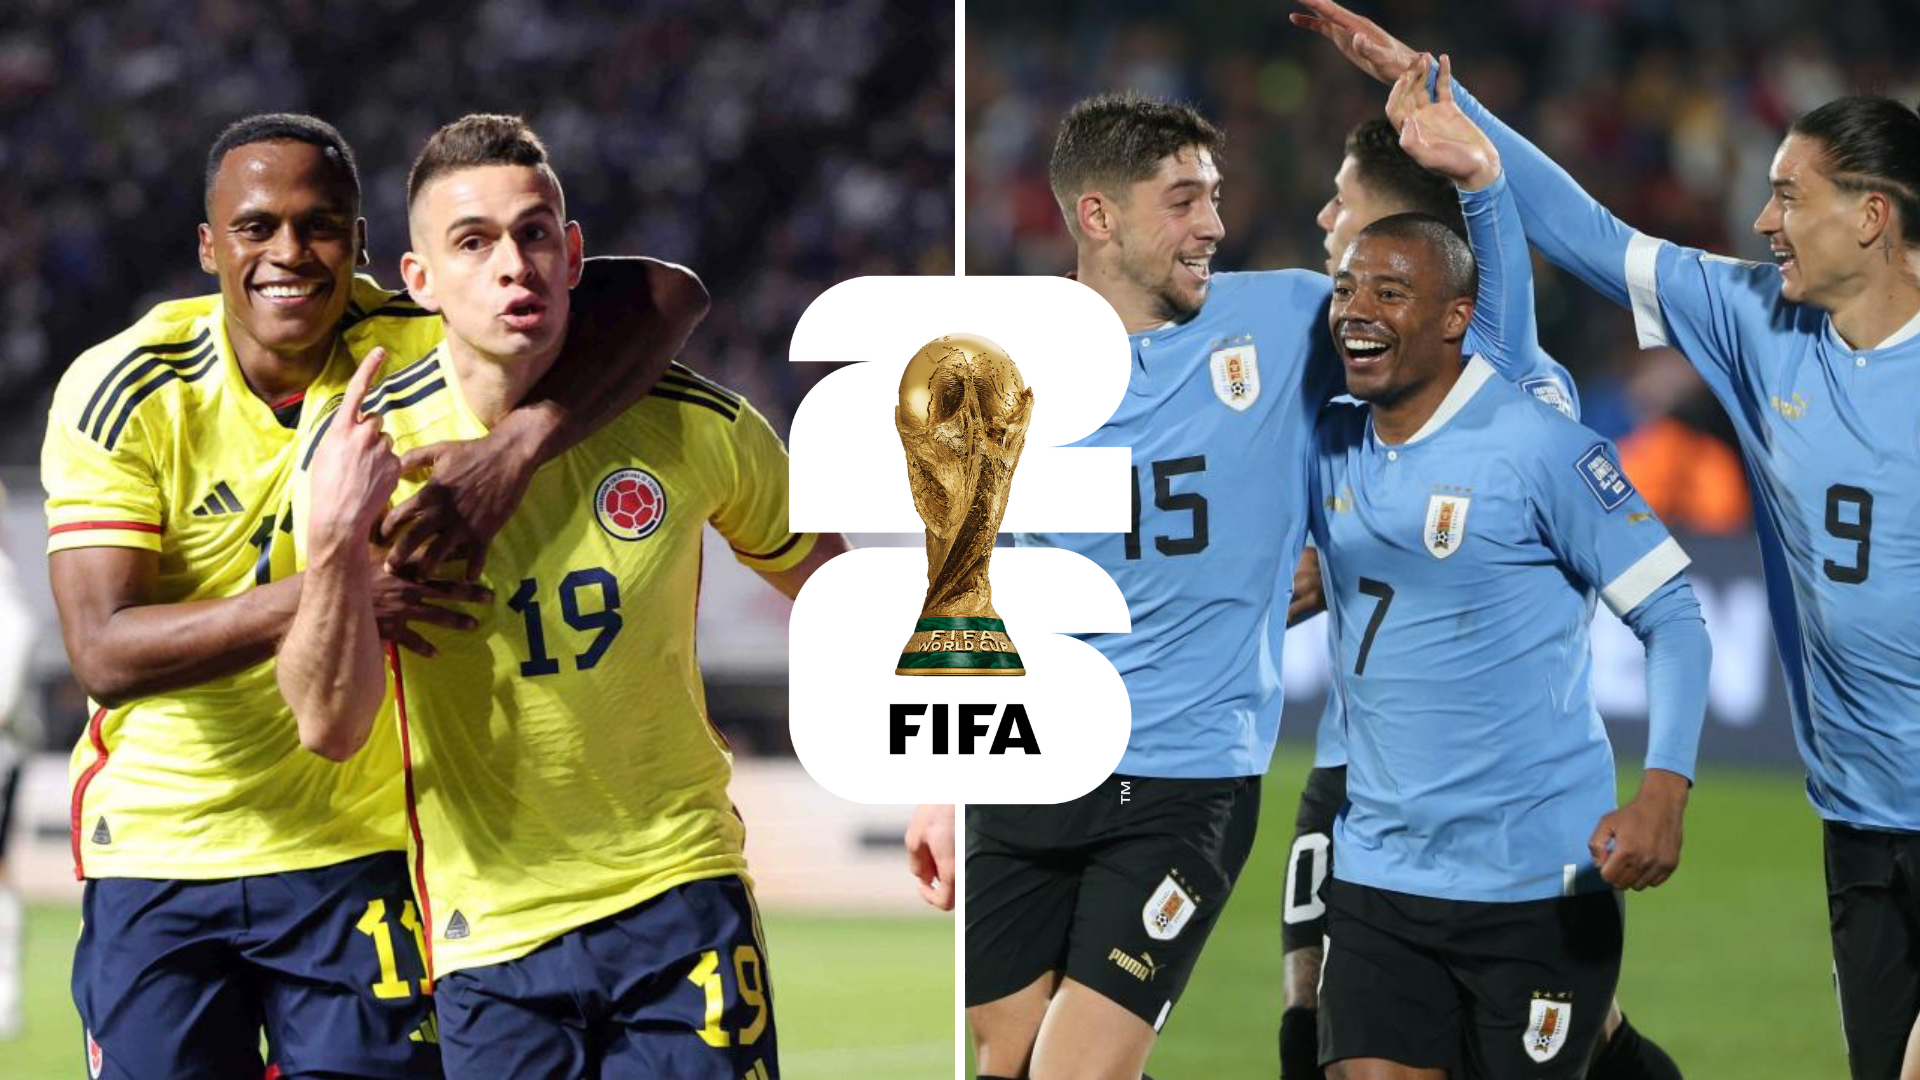 Colombia prueba su fútbol hoy ante Uruguay en las Eliminatorias